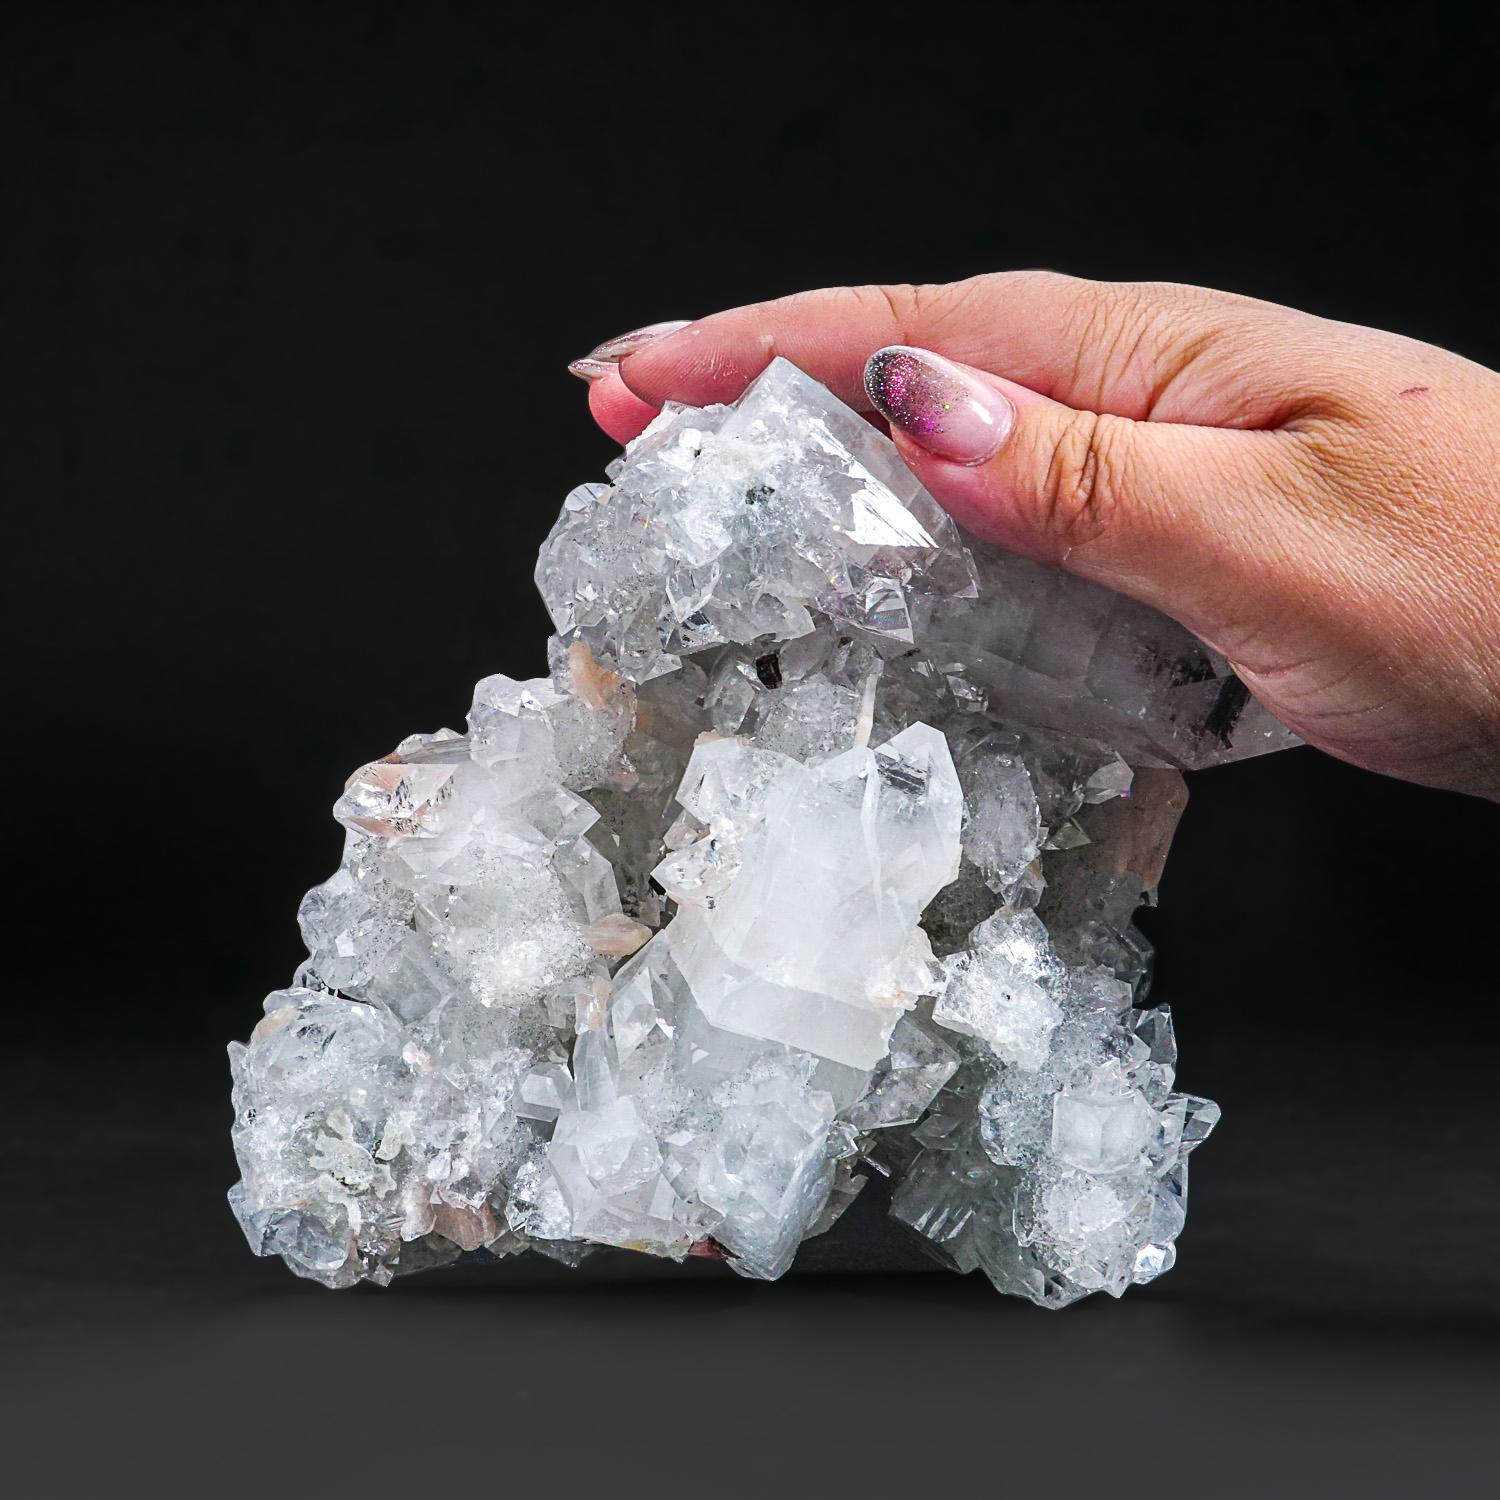 De Jalgaon, district d'Aurangabad, Maharastra, Inde Amas complexe et lustré de cristaux d'apophyllite transparents et incolores se recoupant, recouvrant entièrement des formations de quartz stalactitique. Les cristaux d'apophyllite varient de